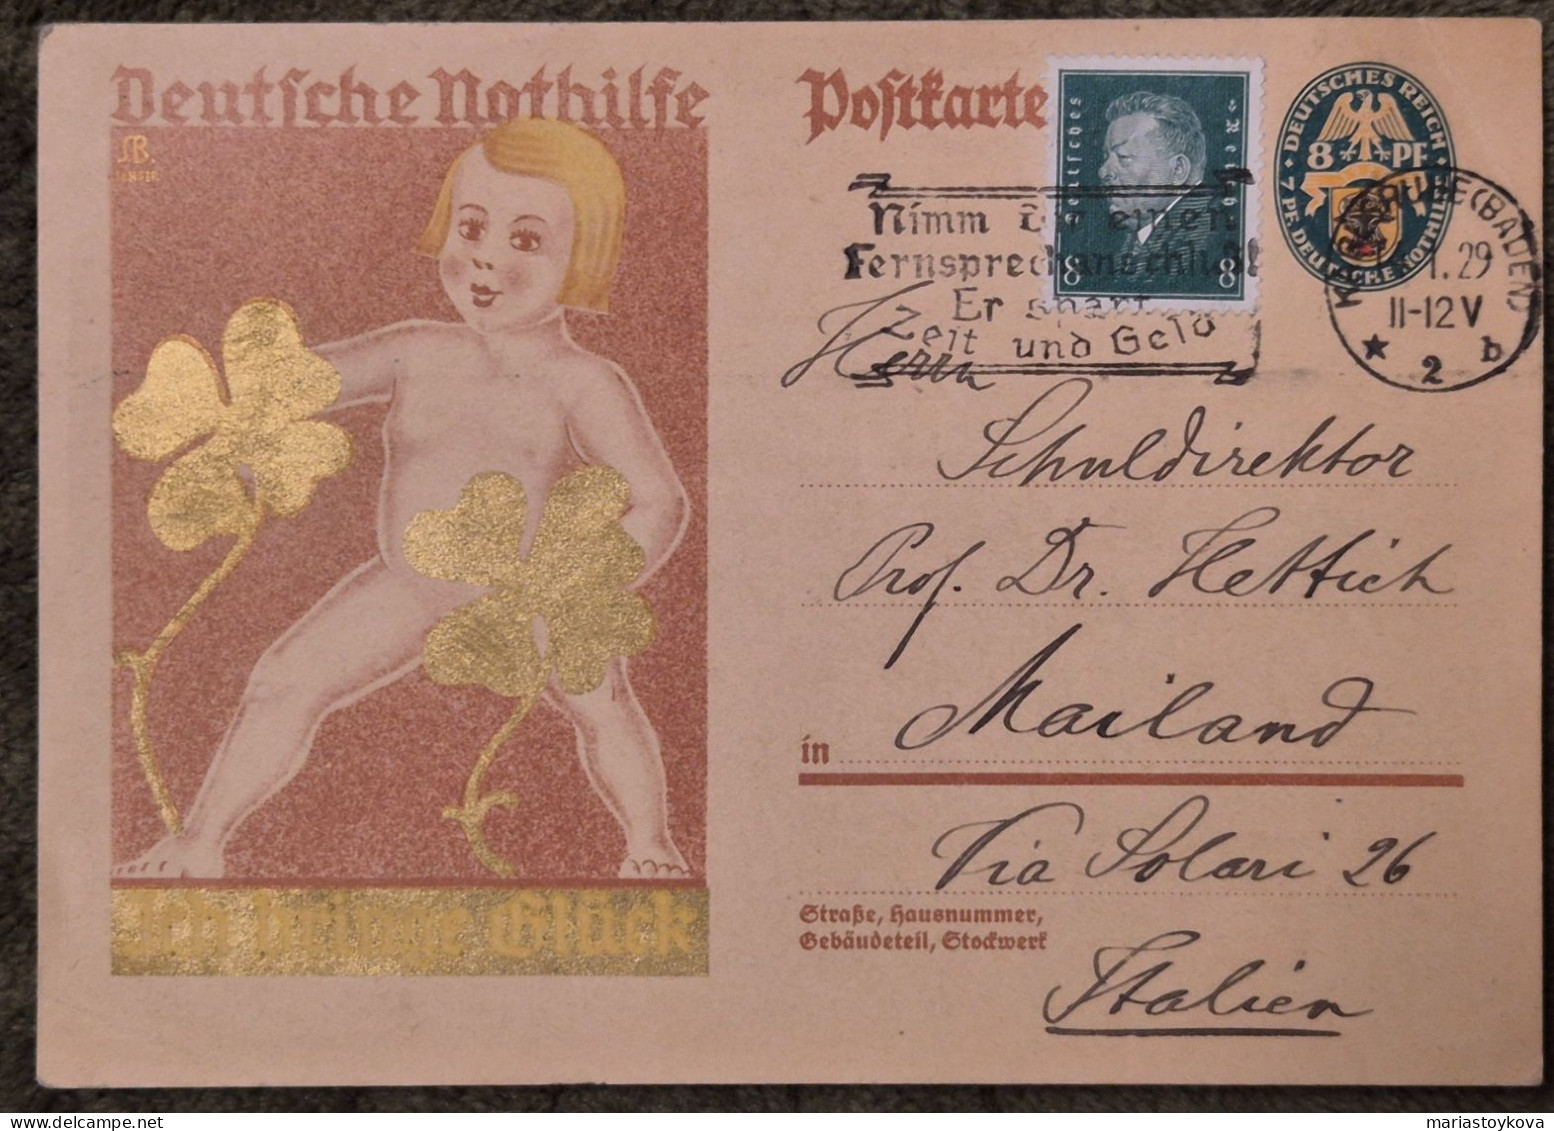 1929.Aus Karlsruhe Nach Mailand. Deutsche Nothilfe, Ich Bringe Glück, 8 Pfennig - Postcards